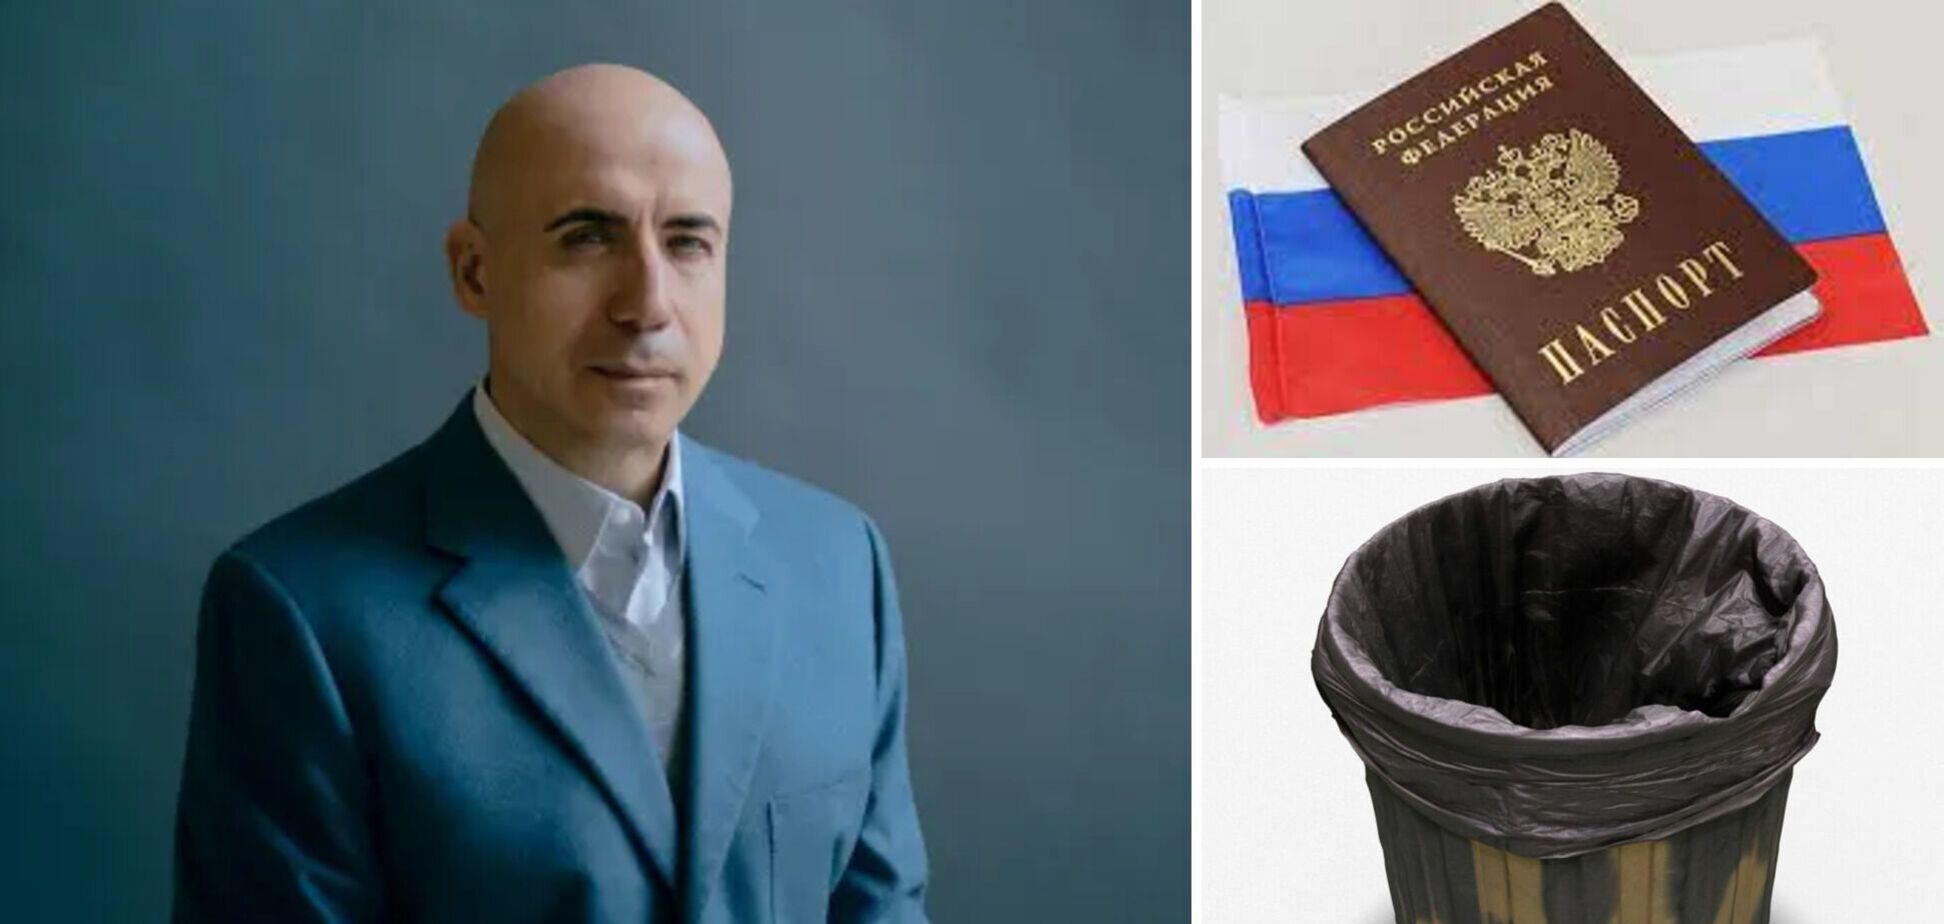 Мільярдер Мільнер, який посідає 15-те місце в російському Forbes, відмовився від громадянства РФ